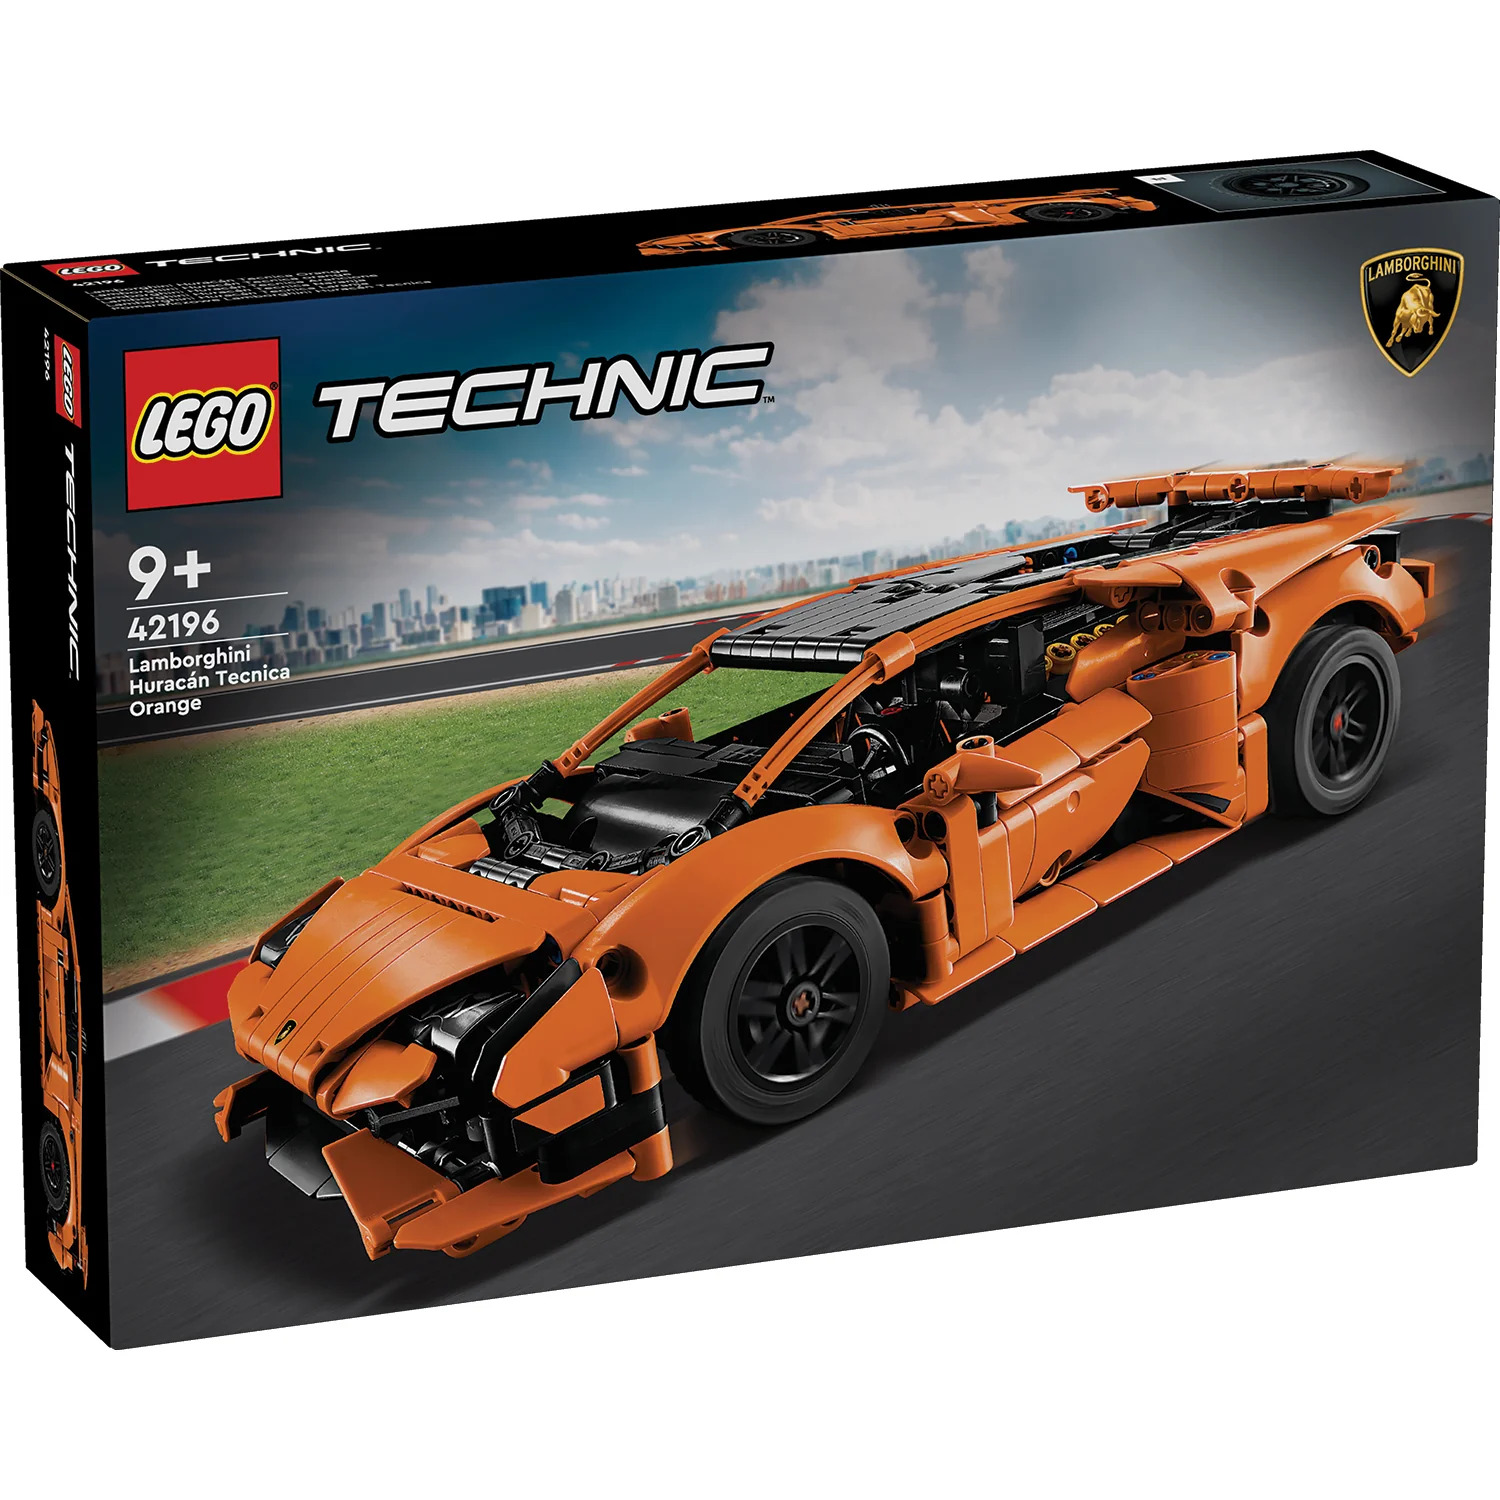 Sta arrivando una Lamborghini Huracan! Ecco il set LEGO® Technic 42196